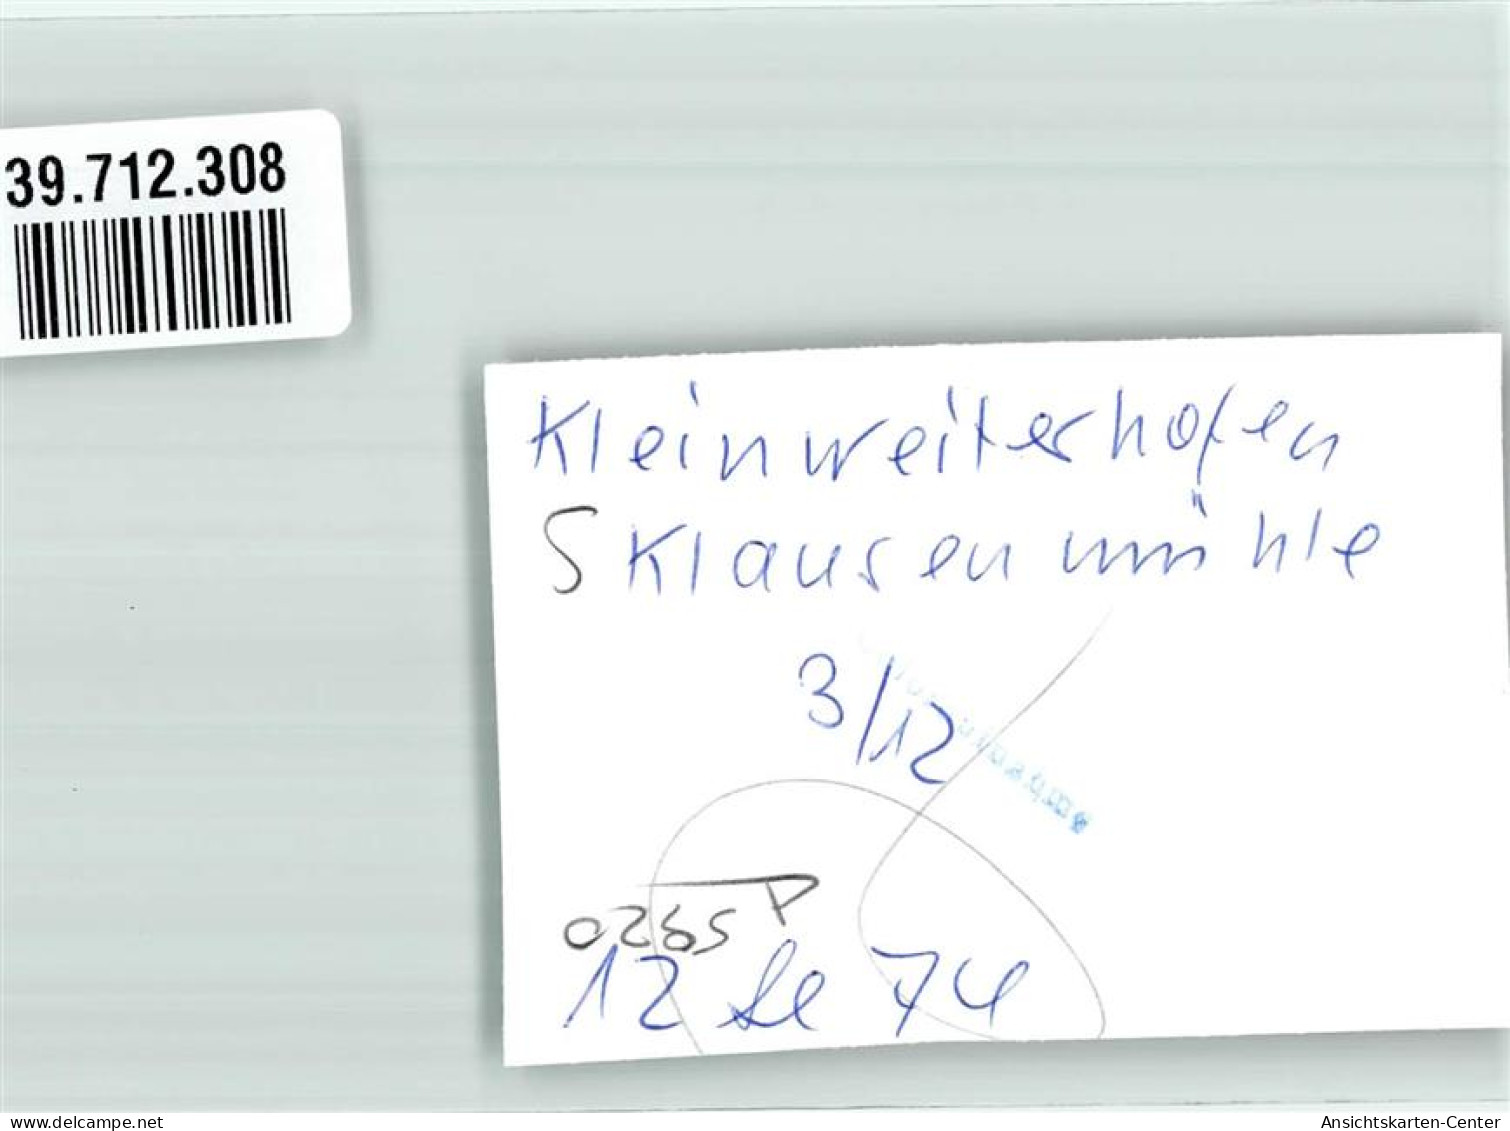 39712308 - Kleinweiler-Hofen - Immenstadt